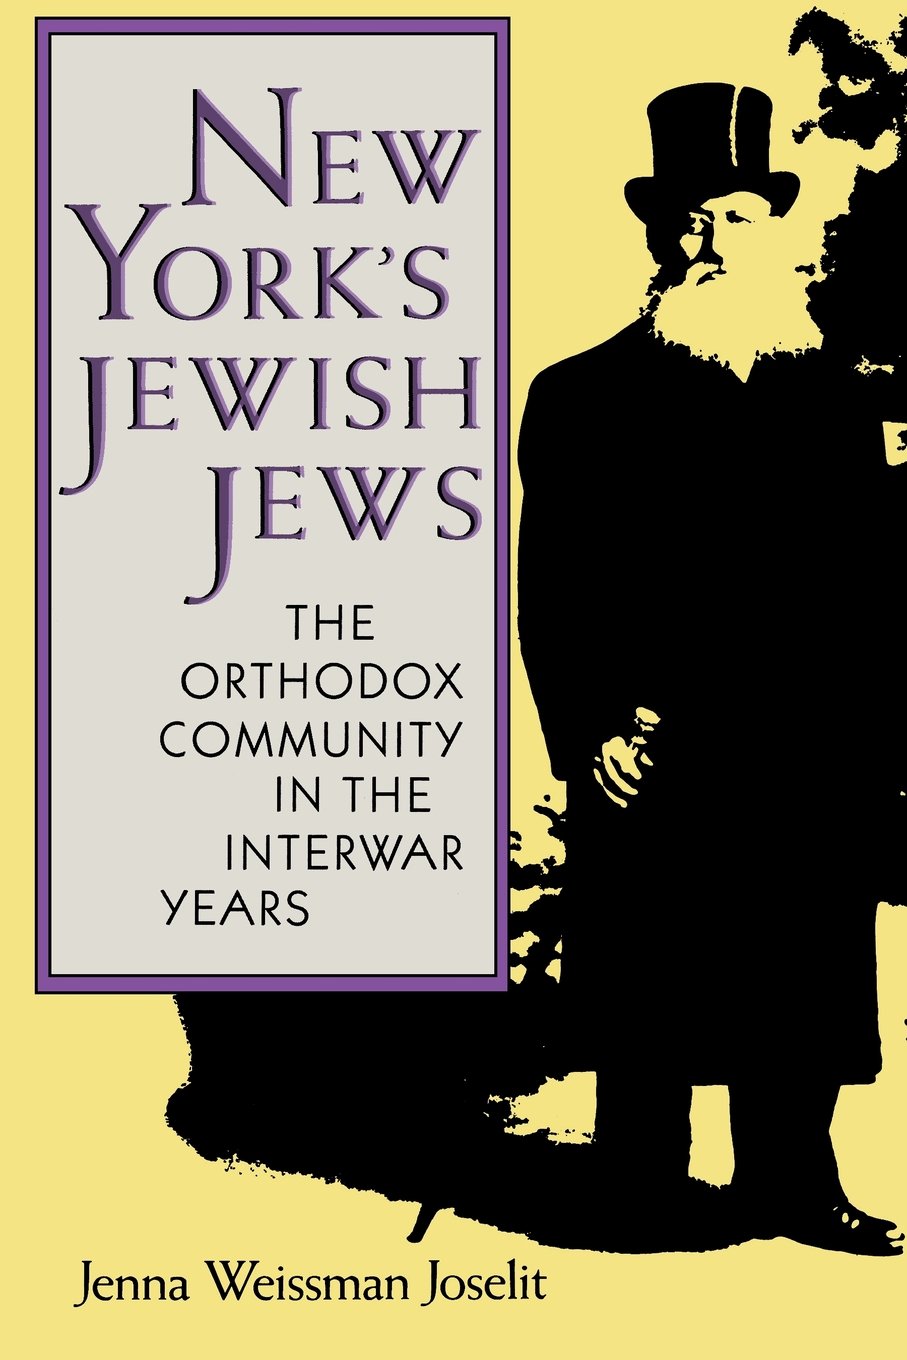 New York's Jewish Jews: The Orthodox Community in the Interwar Years